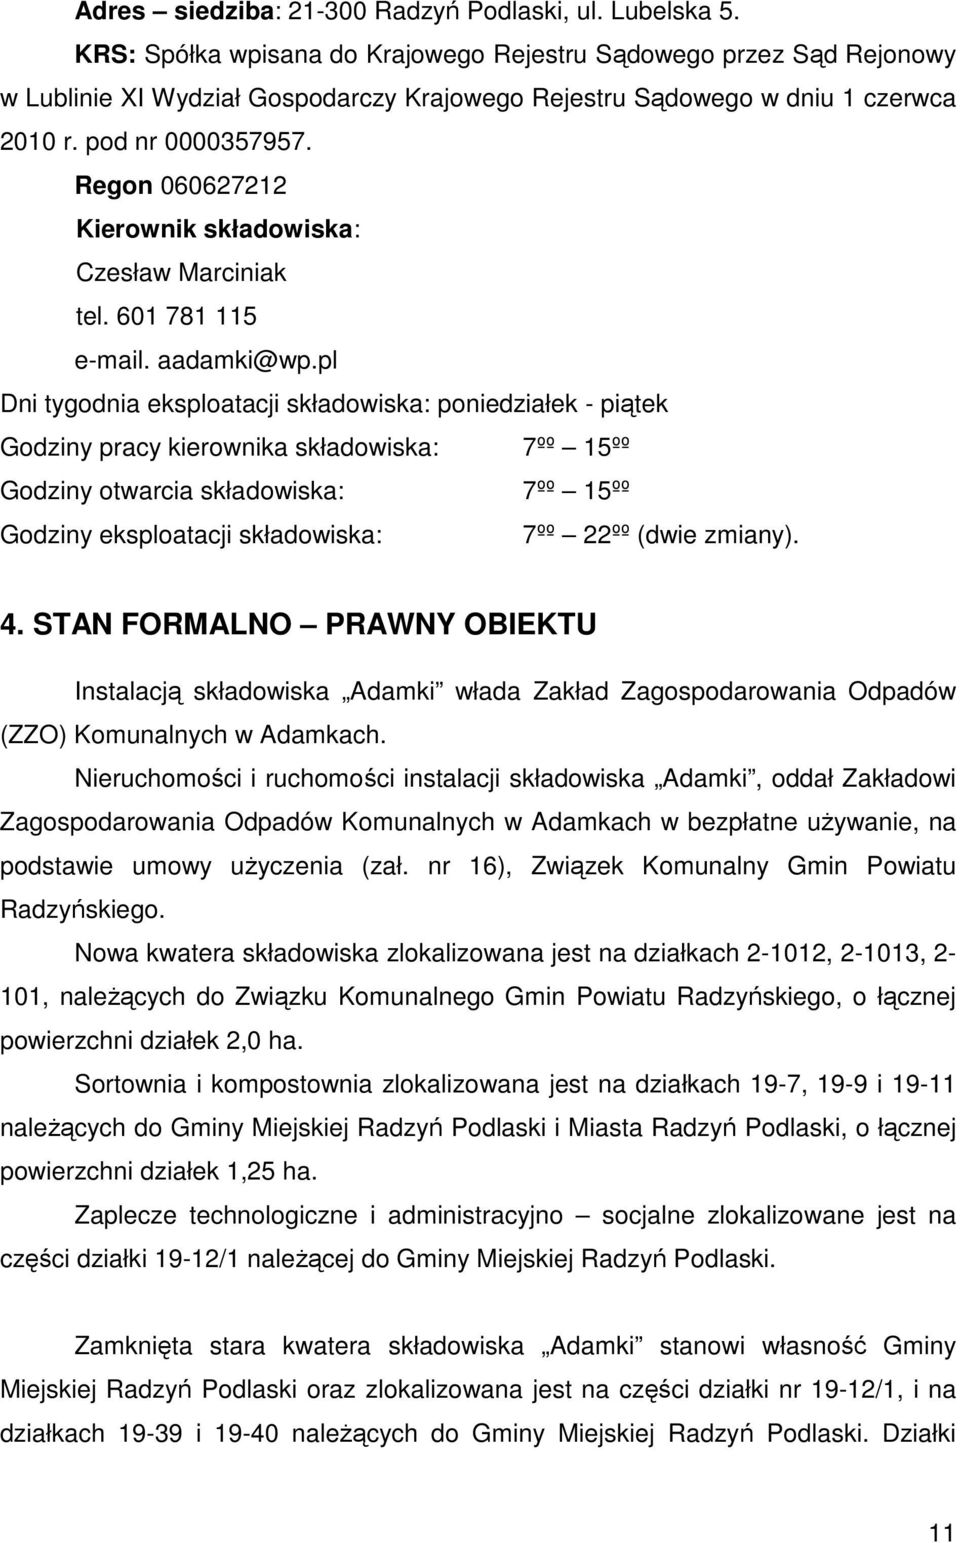 Regon 060627212 Kierownik składowiska: Czesław Marciniak tel. 601 781 115 e-mail. aadamki@wp.